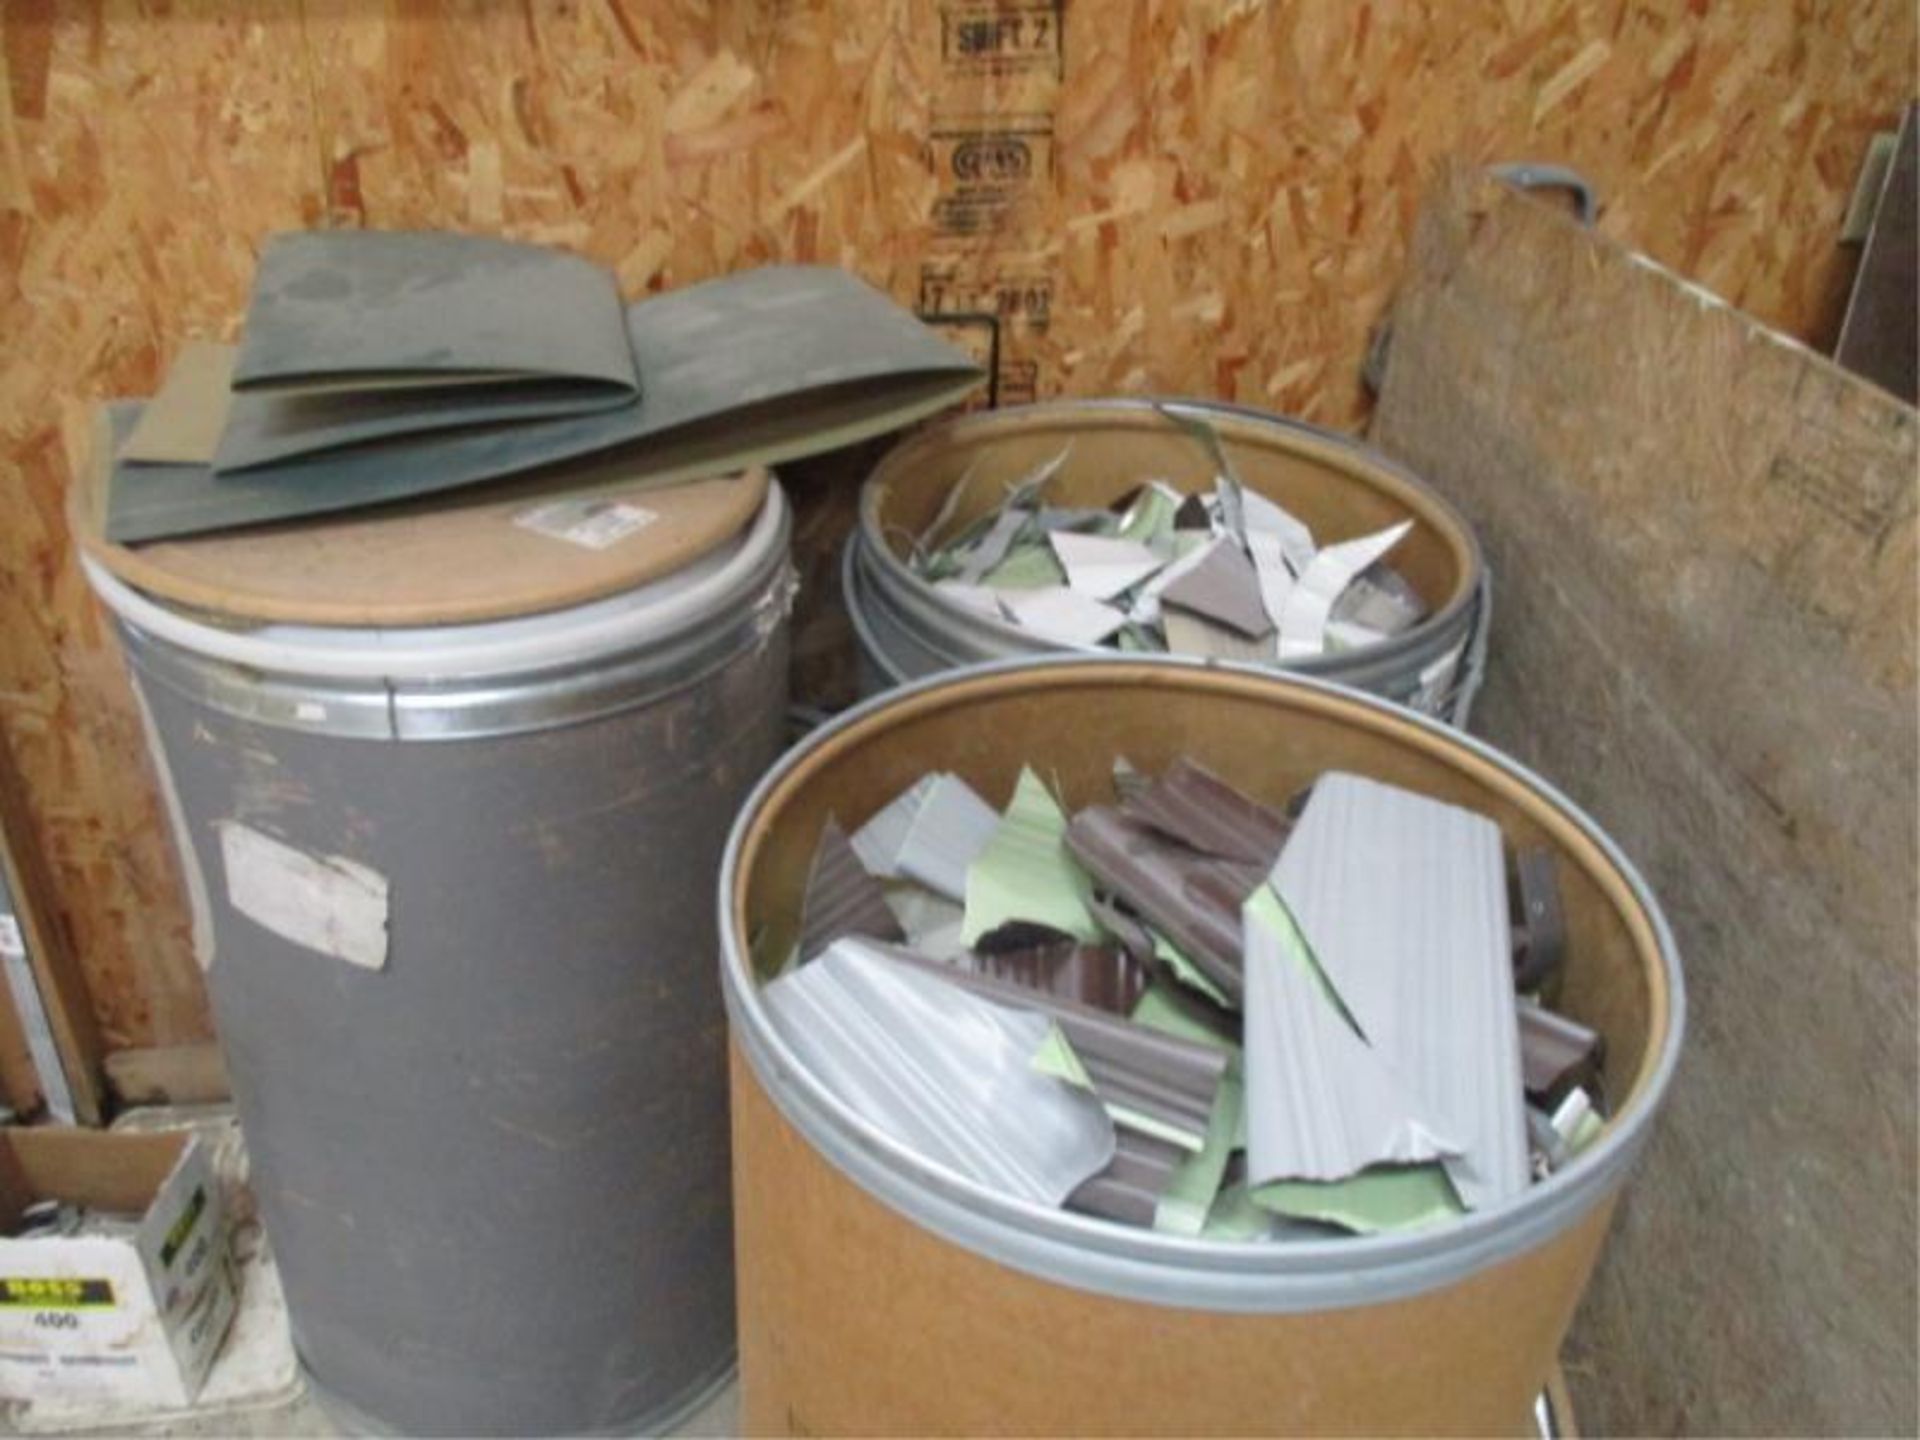 2 Barrels of Scrap Aluminum Siding and half Barrel of Cans